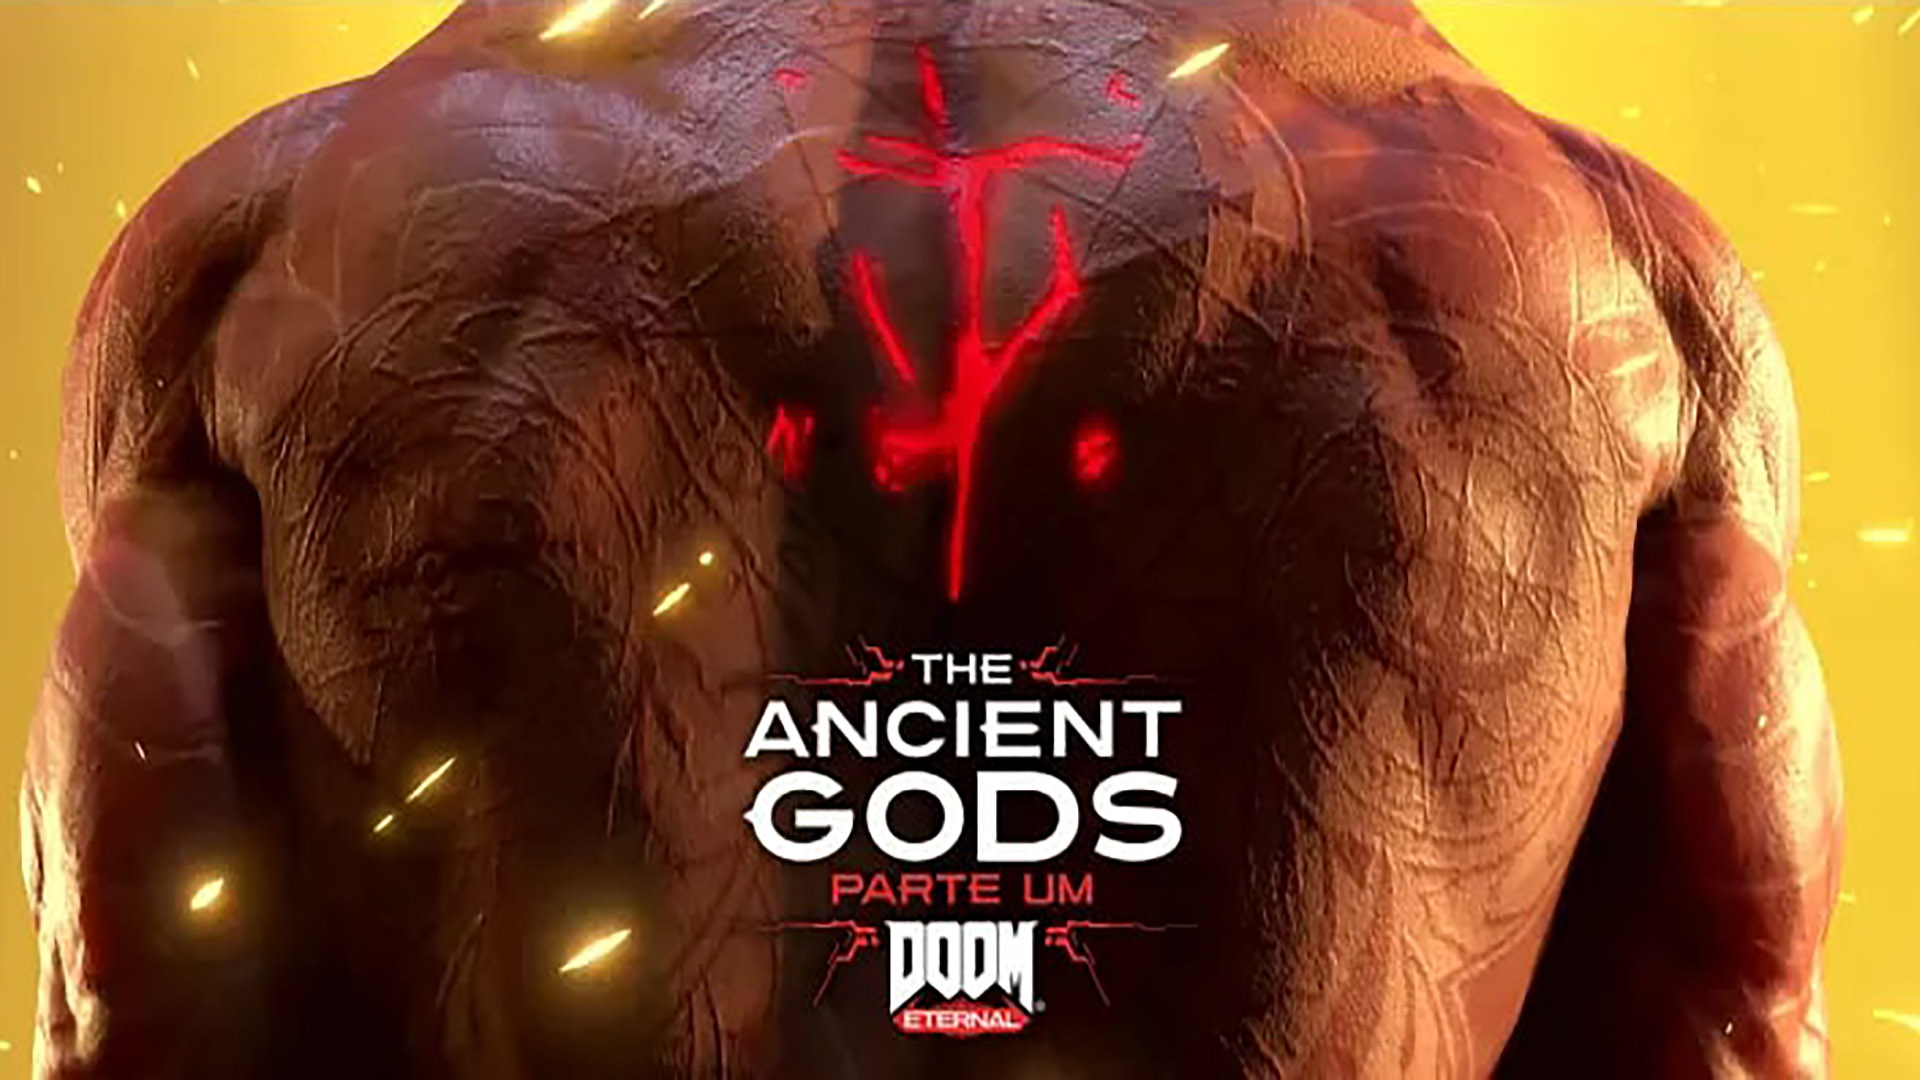 DOOM ETERNAL: The Ancient Gods Parte Um | #PlayWoo